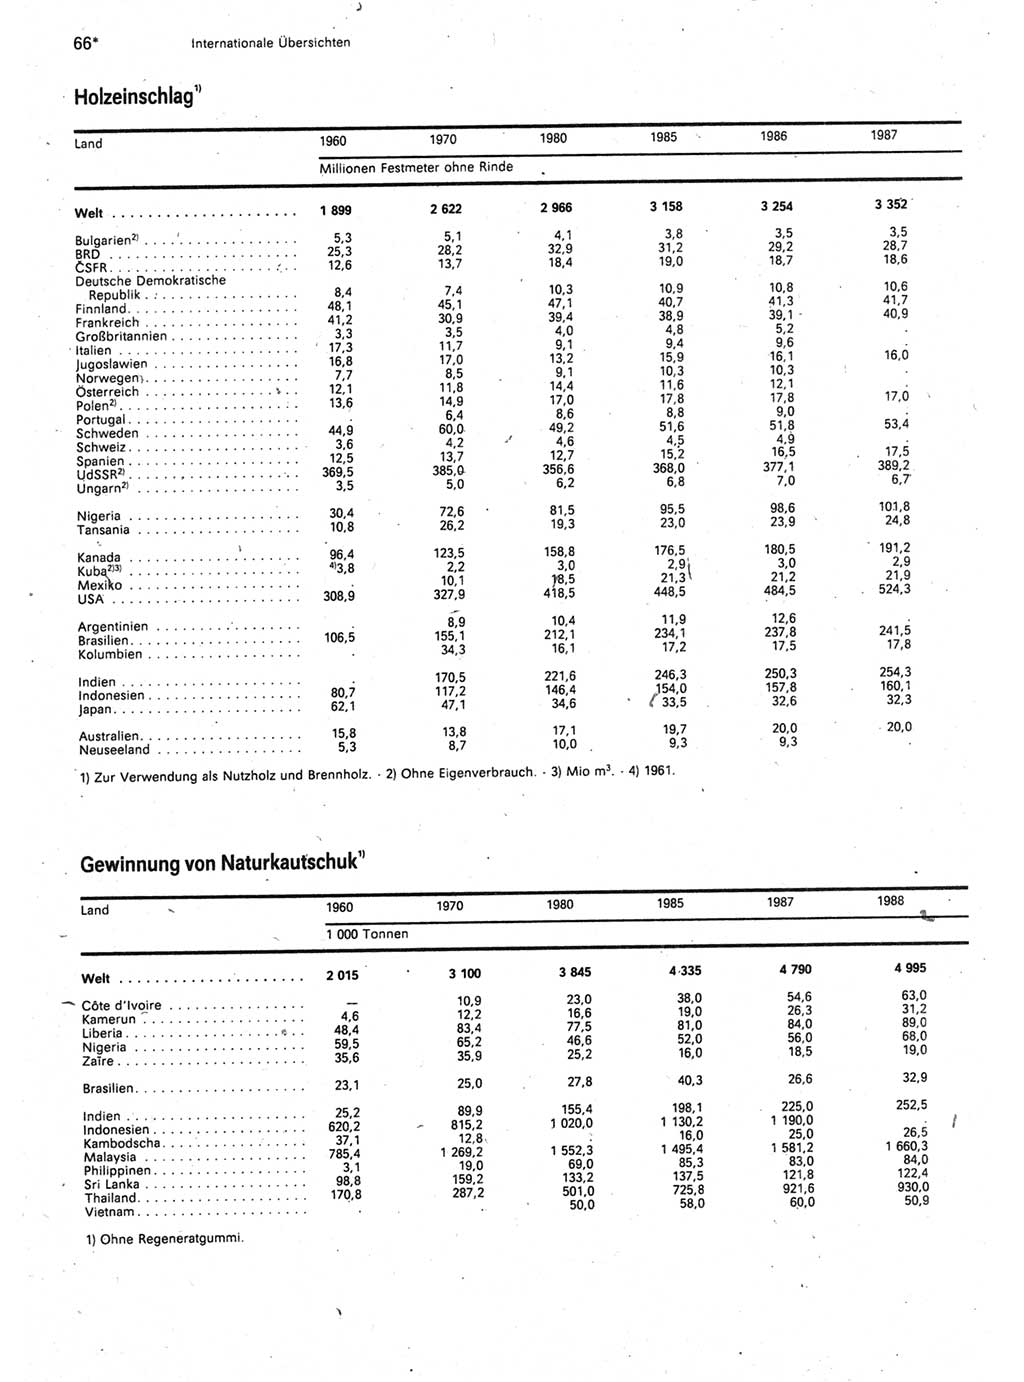 Statistisches Jahrbuch der Deutschen Demokratischen Republik (DDR) 1990, Seite 66 (Stat. Jb. DDR 1990, S. 66)